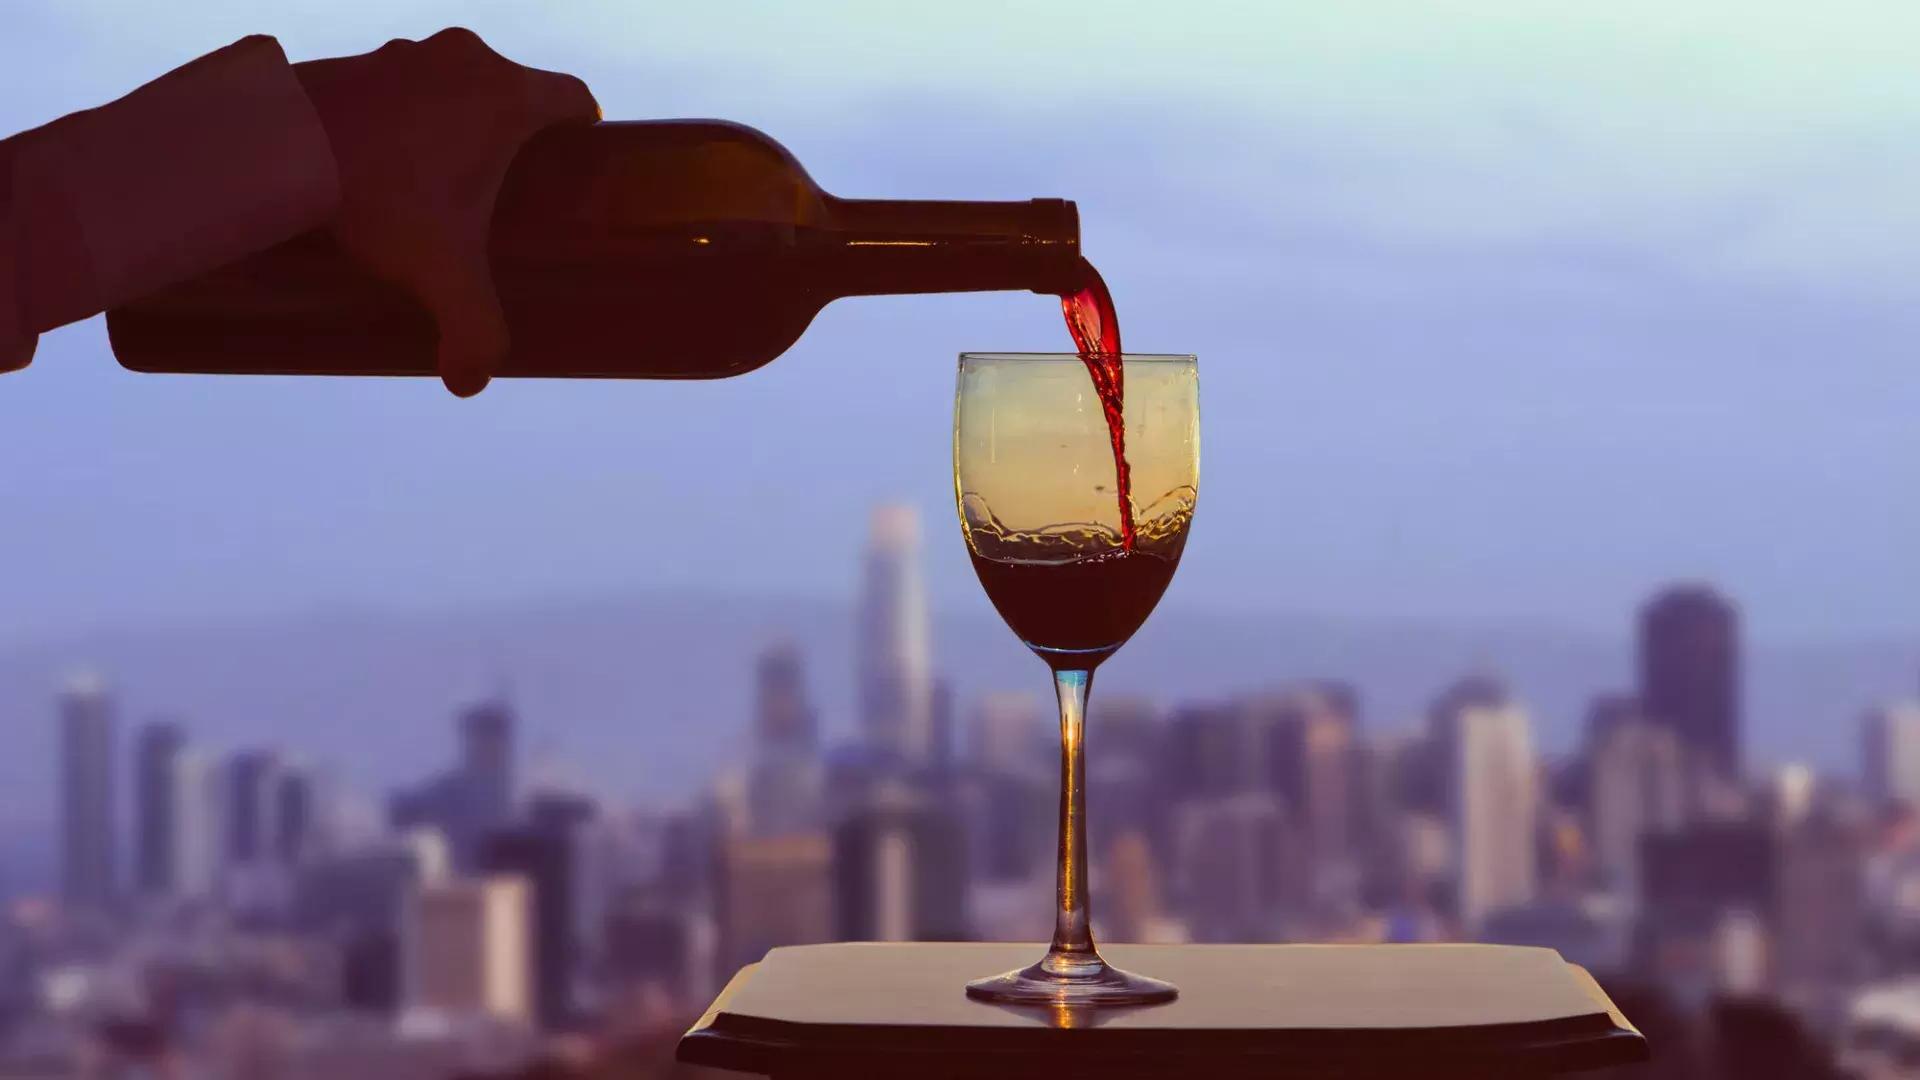 Se sirve una copa de vino tinto, con el horizonte de San Francisco visible desde la ventana.